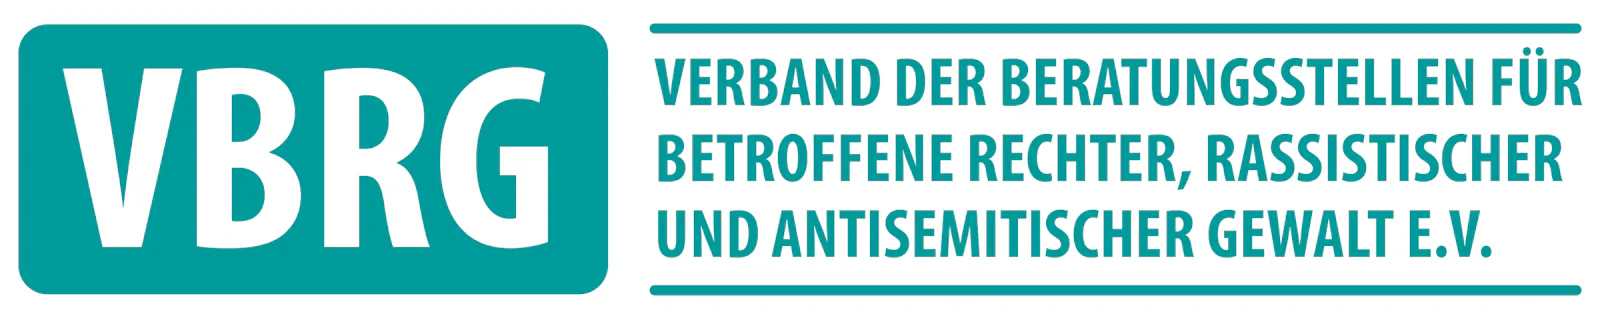 Das Logo des Vereins VBRG, Verband der Beratungsstellen für Betroffene rechter, rassistischer und antisemitischer Gewalt e.V.